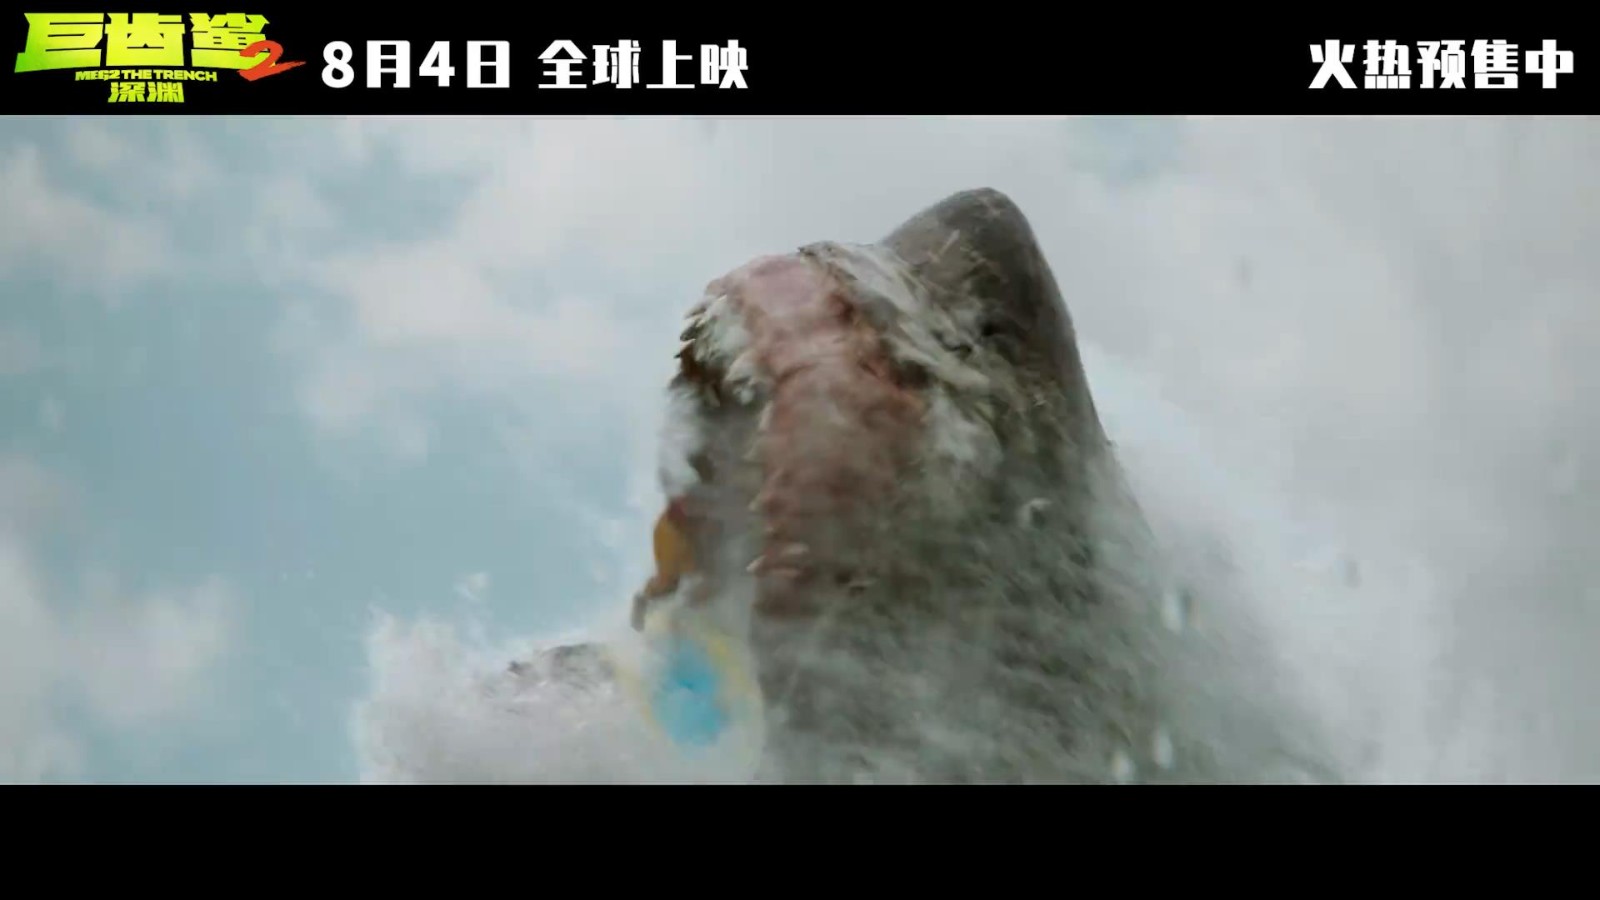 《巨齿鲨2》终极预告和海报 杰森斯坦森大战巨齿鲨